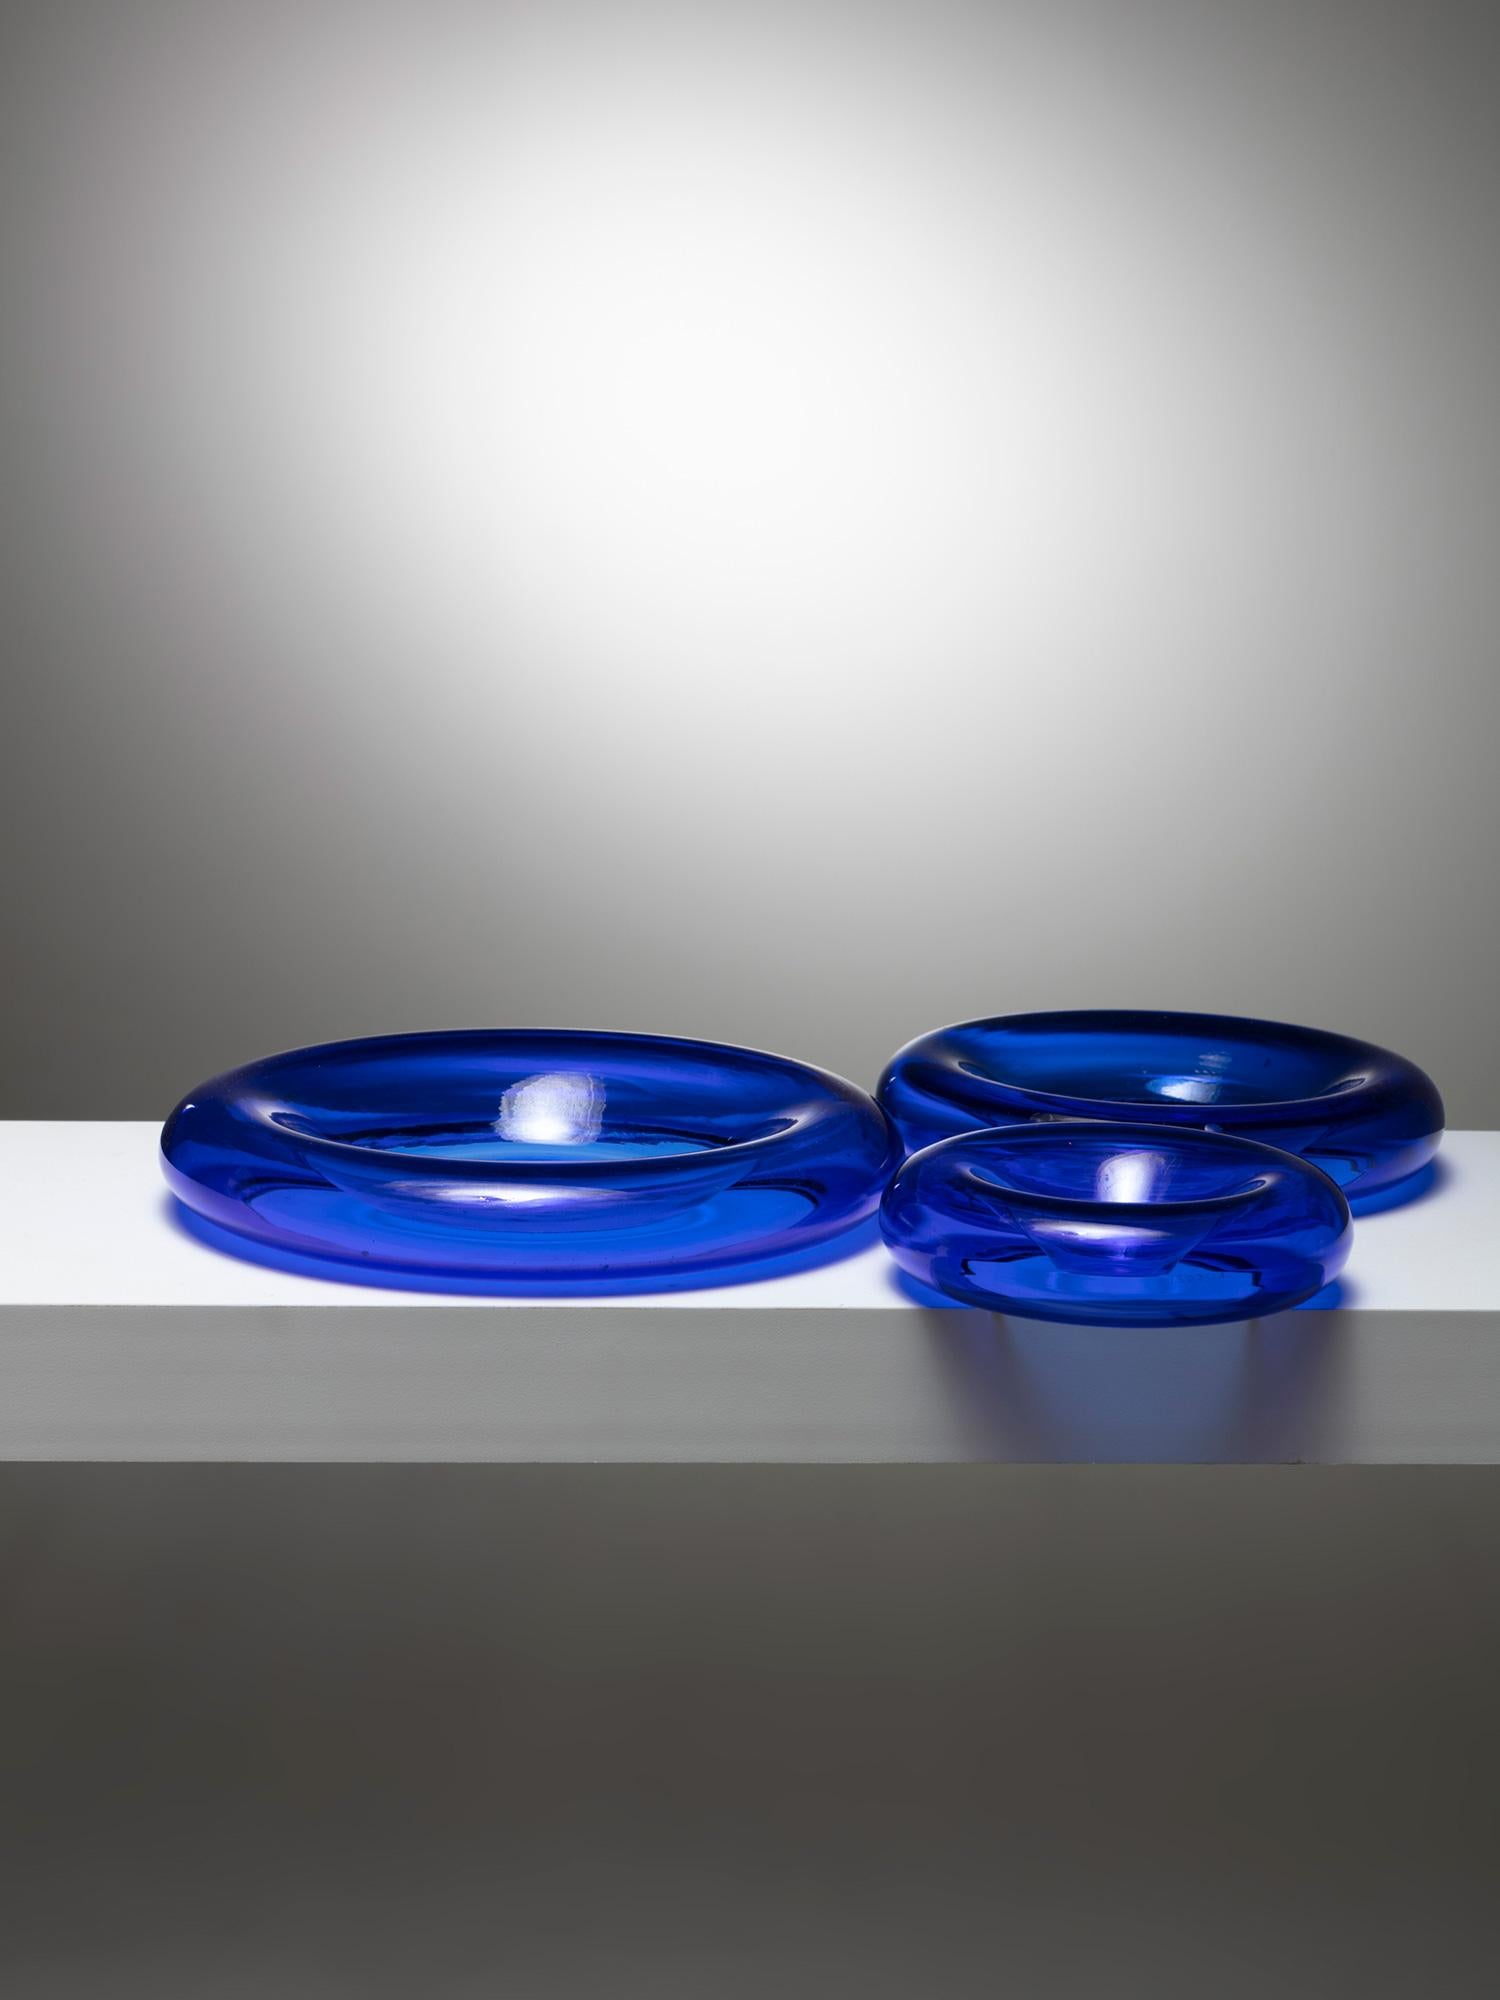 Rare stacking Murano glass centerpieces by Eleonore Peduzzi Riva for Vistosi.